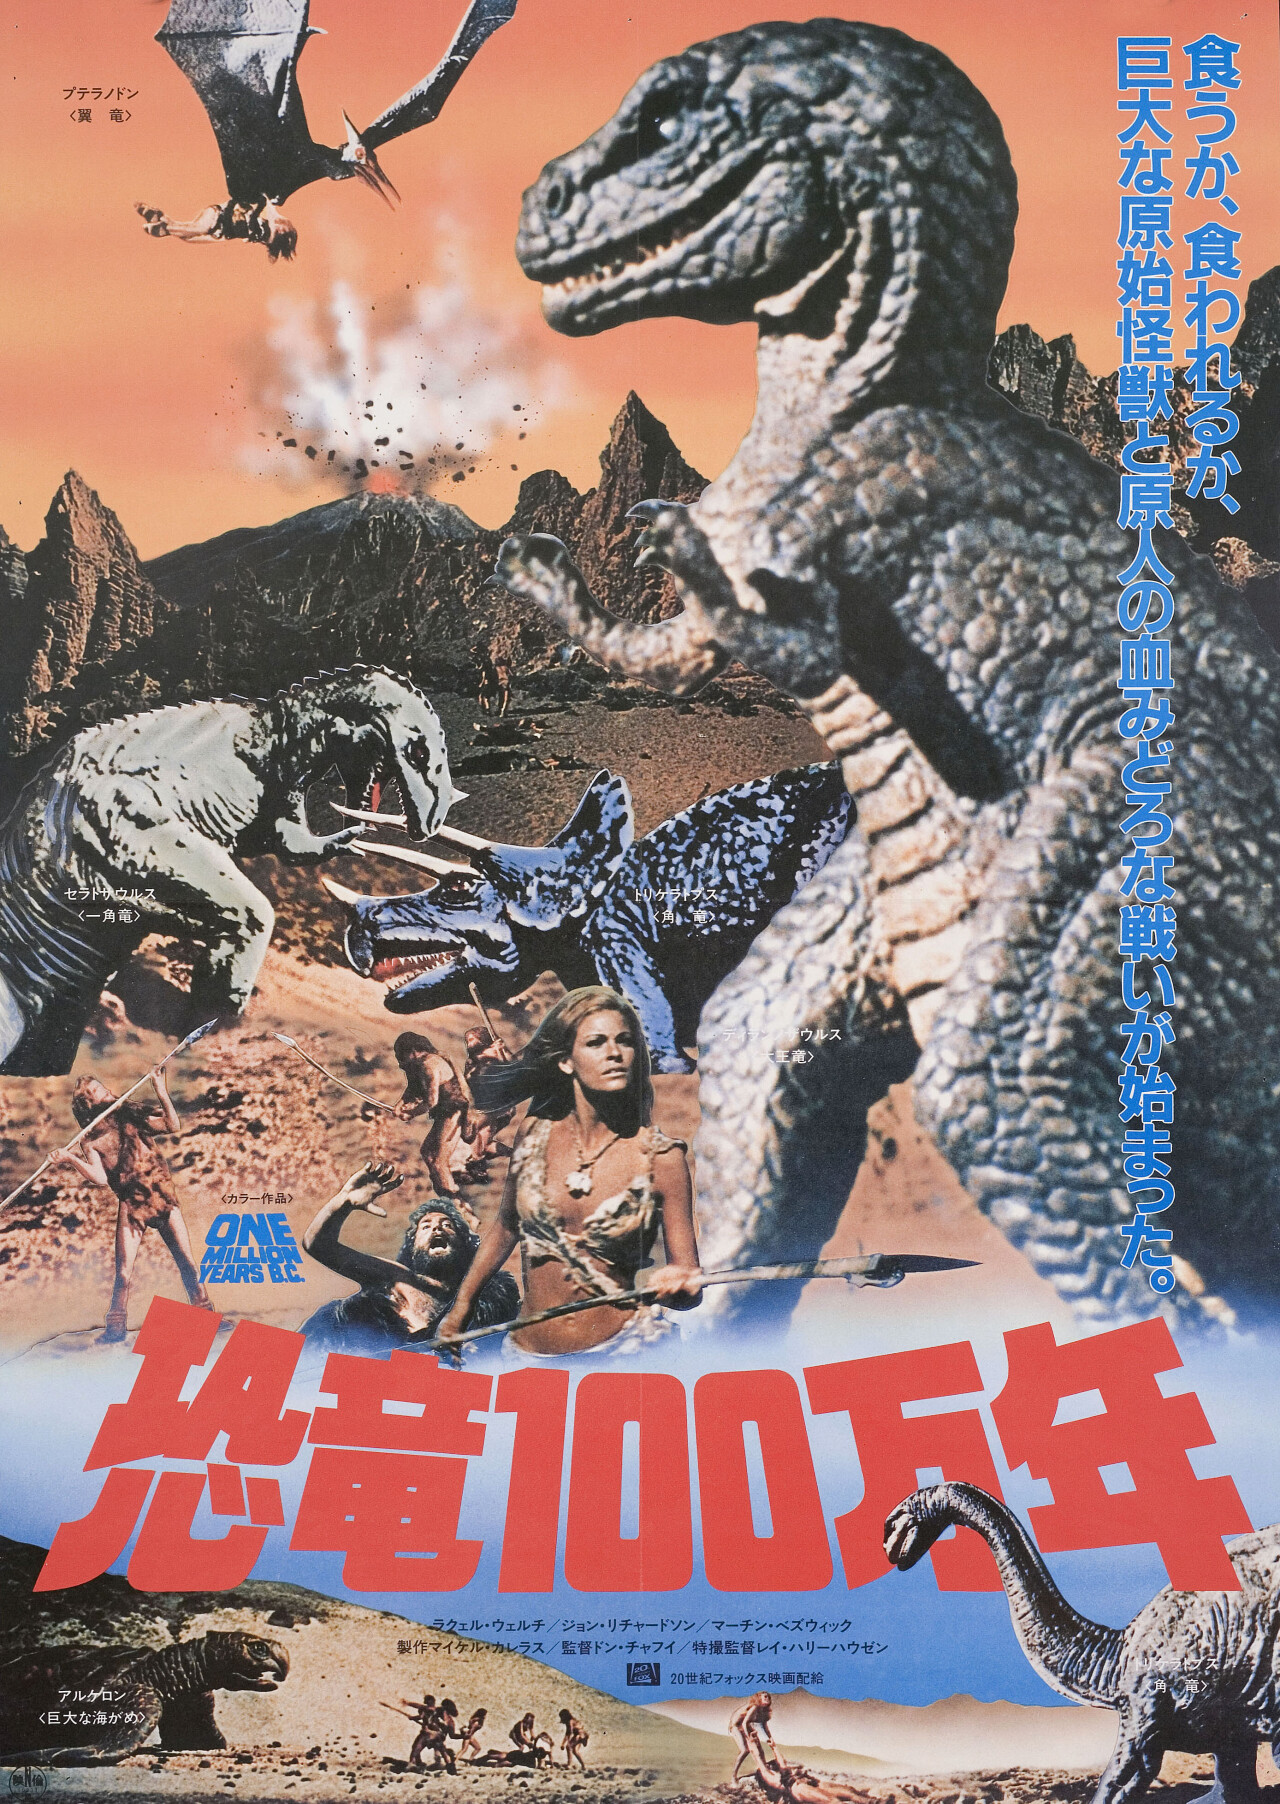 Миллион лет до нашей эры (One Million Years B.C., 1966), режиссёр Дон Чэффи, японский постер к фильму (Hummer horror, 1985 год)